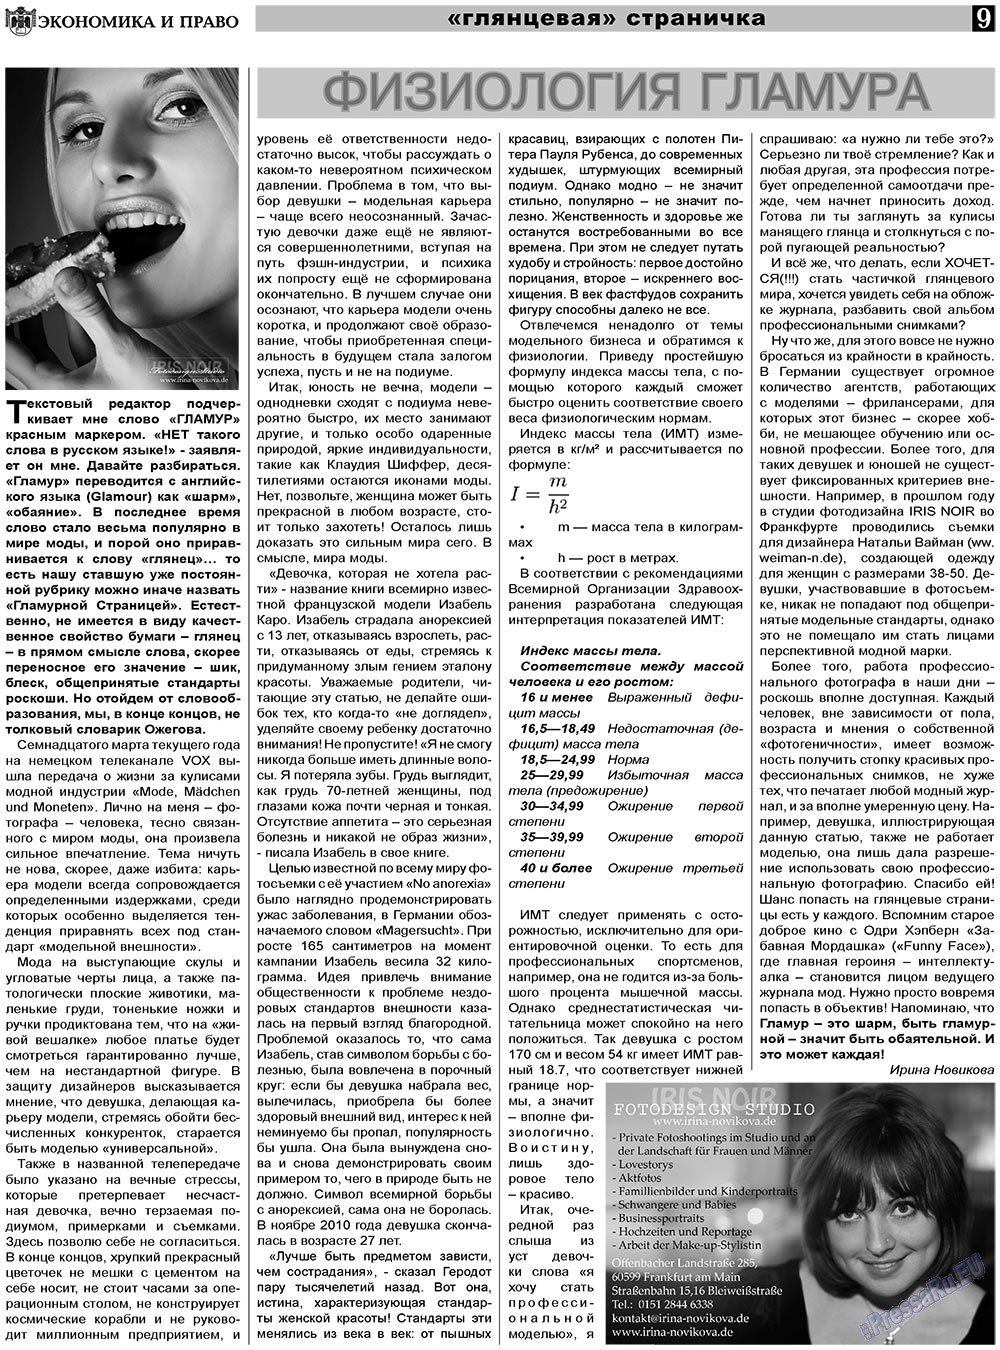 Экономика и право, газета. 2011 №5 стр.9